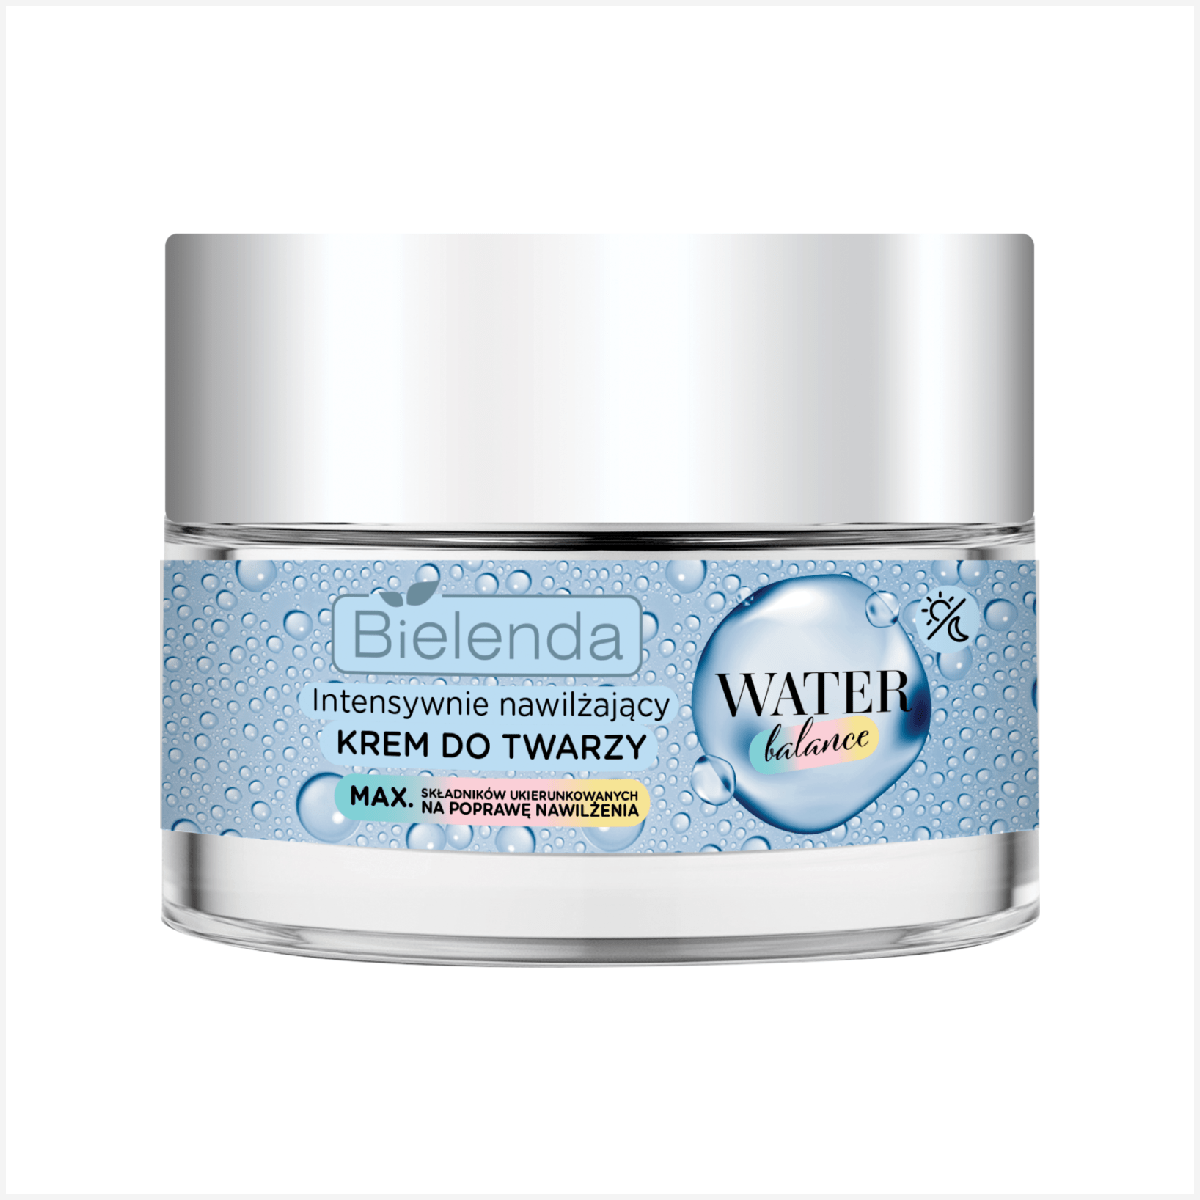 Crema Facial Bielenda Water Balance Moisturizing 50ml - Crema